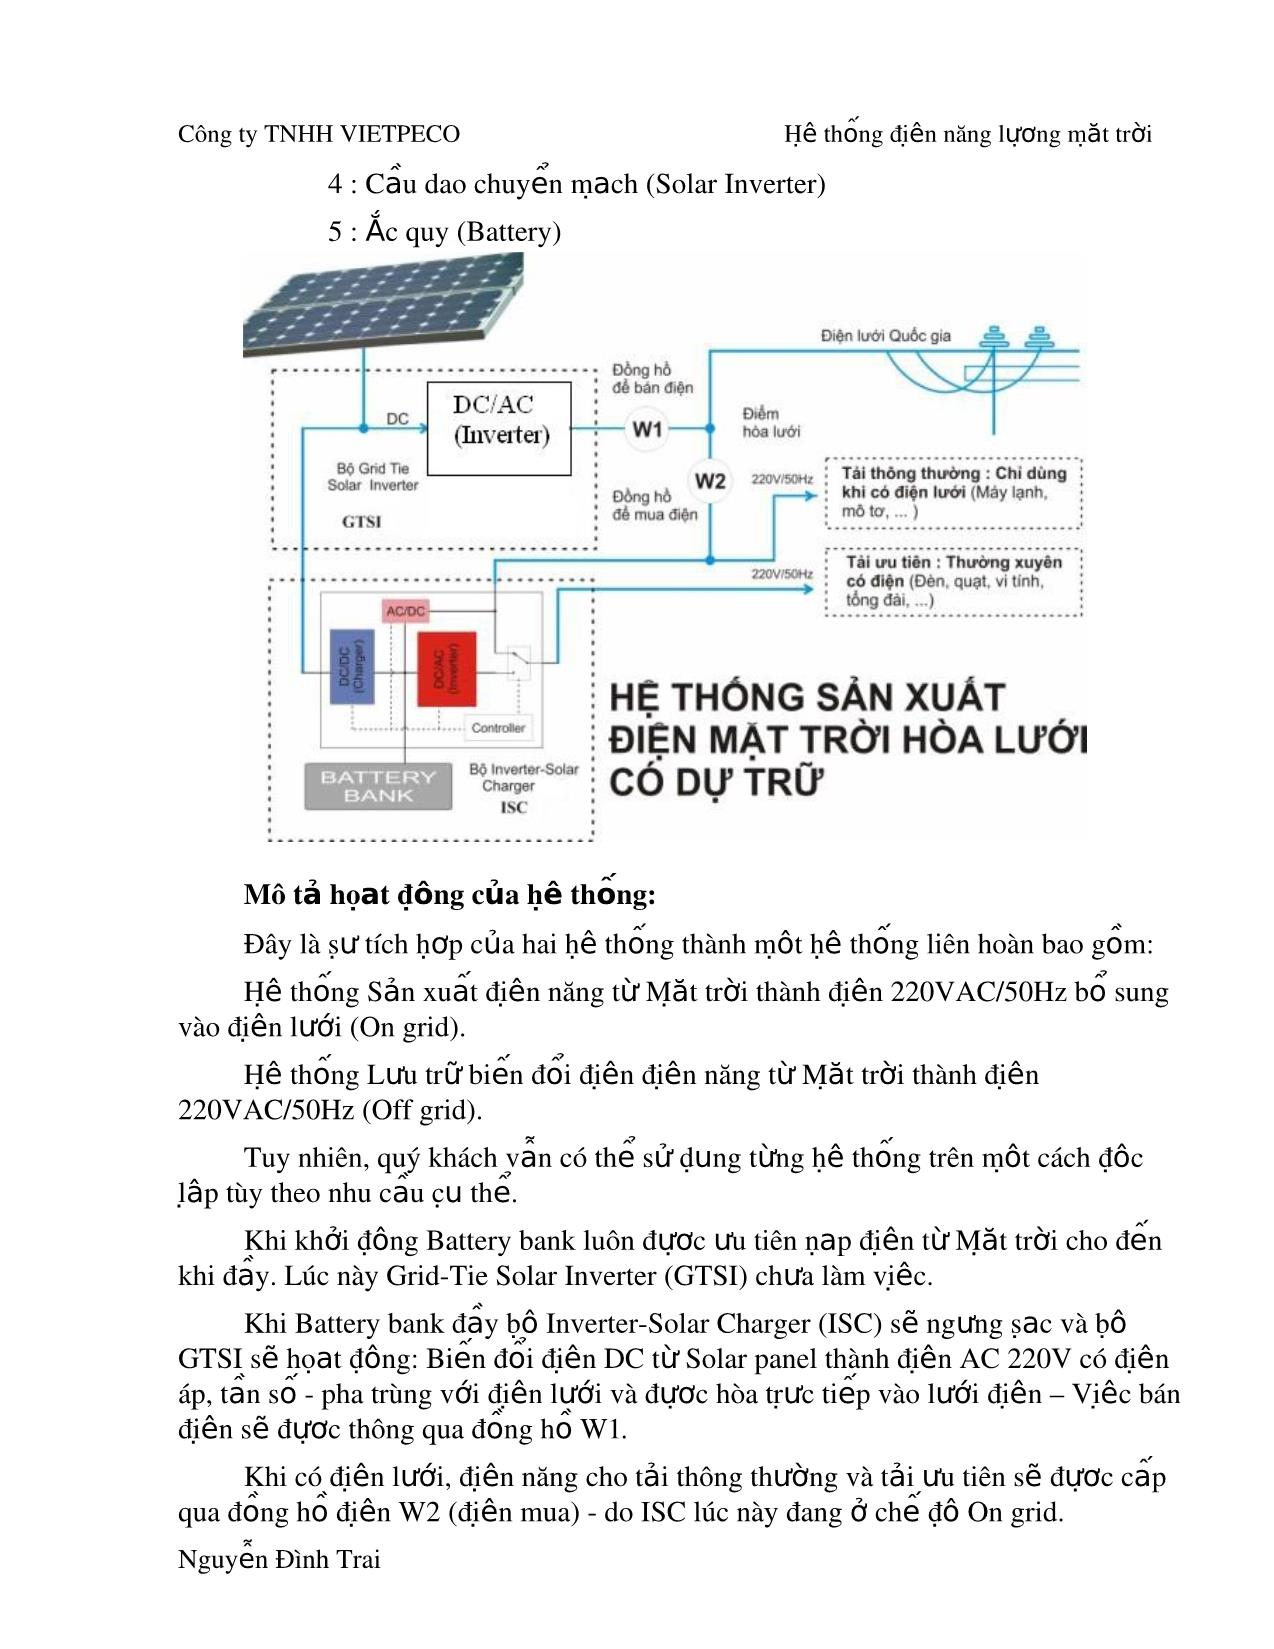 Giáo trình Hệ thống năng lượng mặt trời trang 7